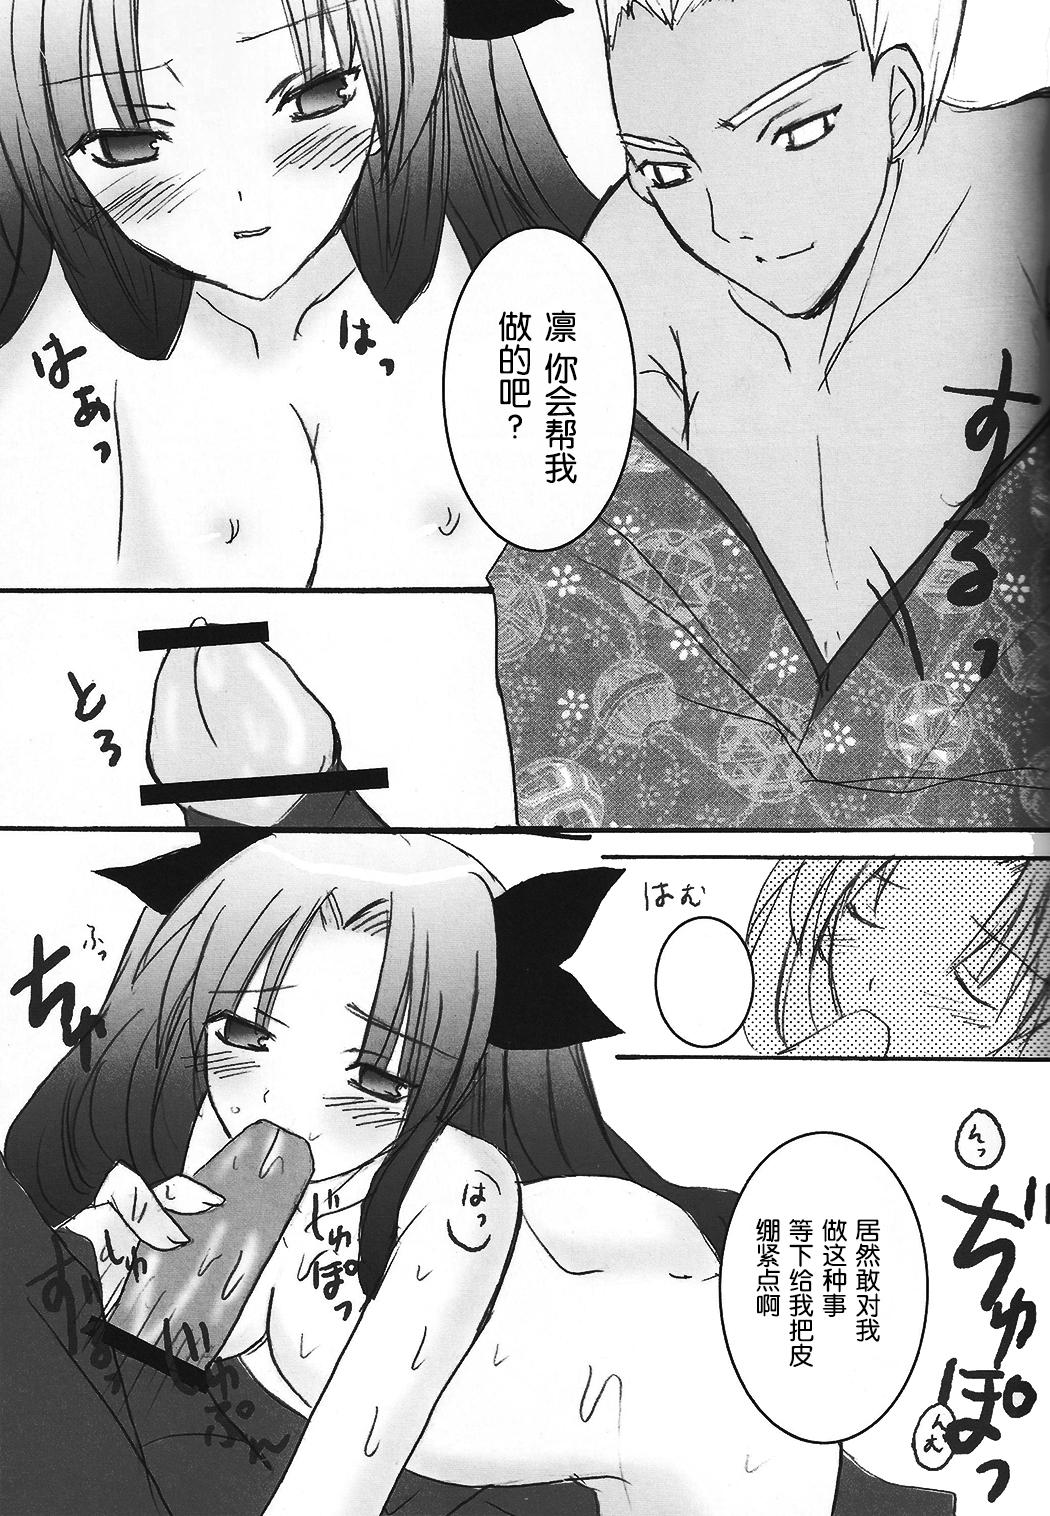 Masterbation Tohsaka Jinja no Hon. - Fate stay night Gonzo - Page 9